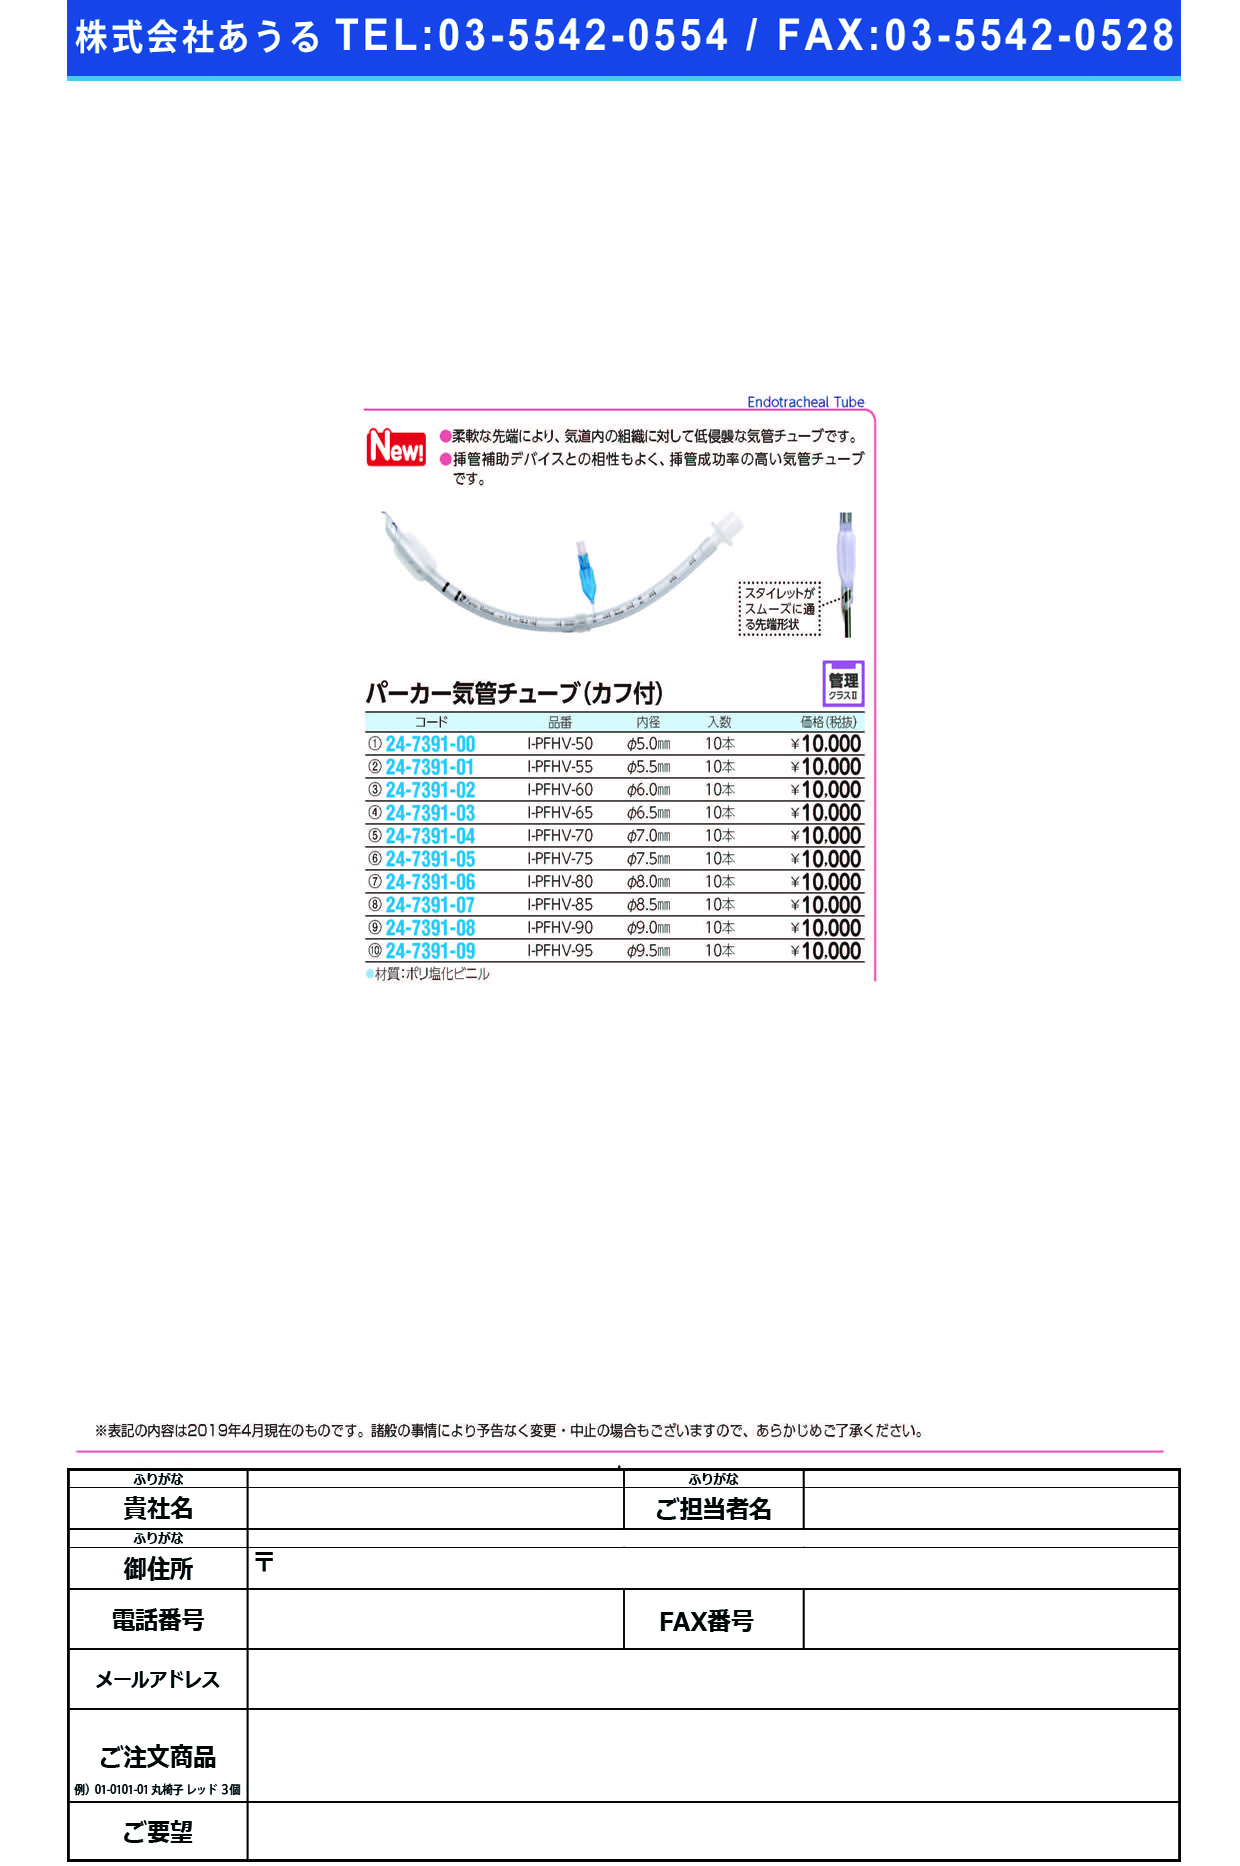 (24-7391-05)パーカー気管チューブI-PFHV-75(7.5MM)10ﾎﾝ ﾊﾟｰｶｰｷｶﾝﾁｭｰﾌﾞ(日本メディカルネクスト)【1箱単位】【2019年カタログ商品】